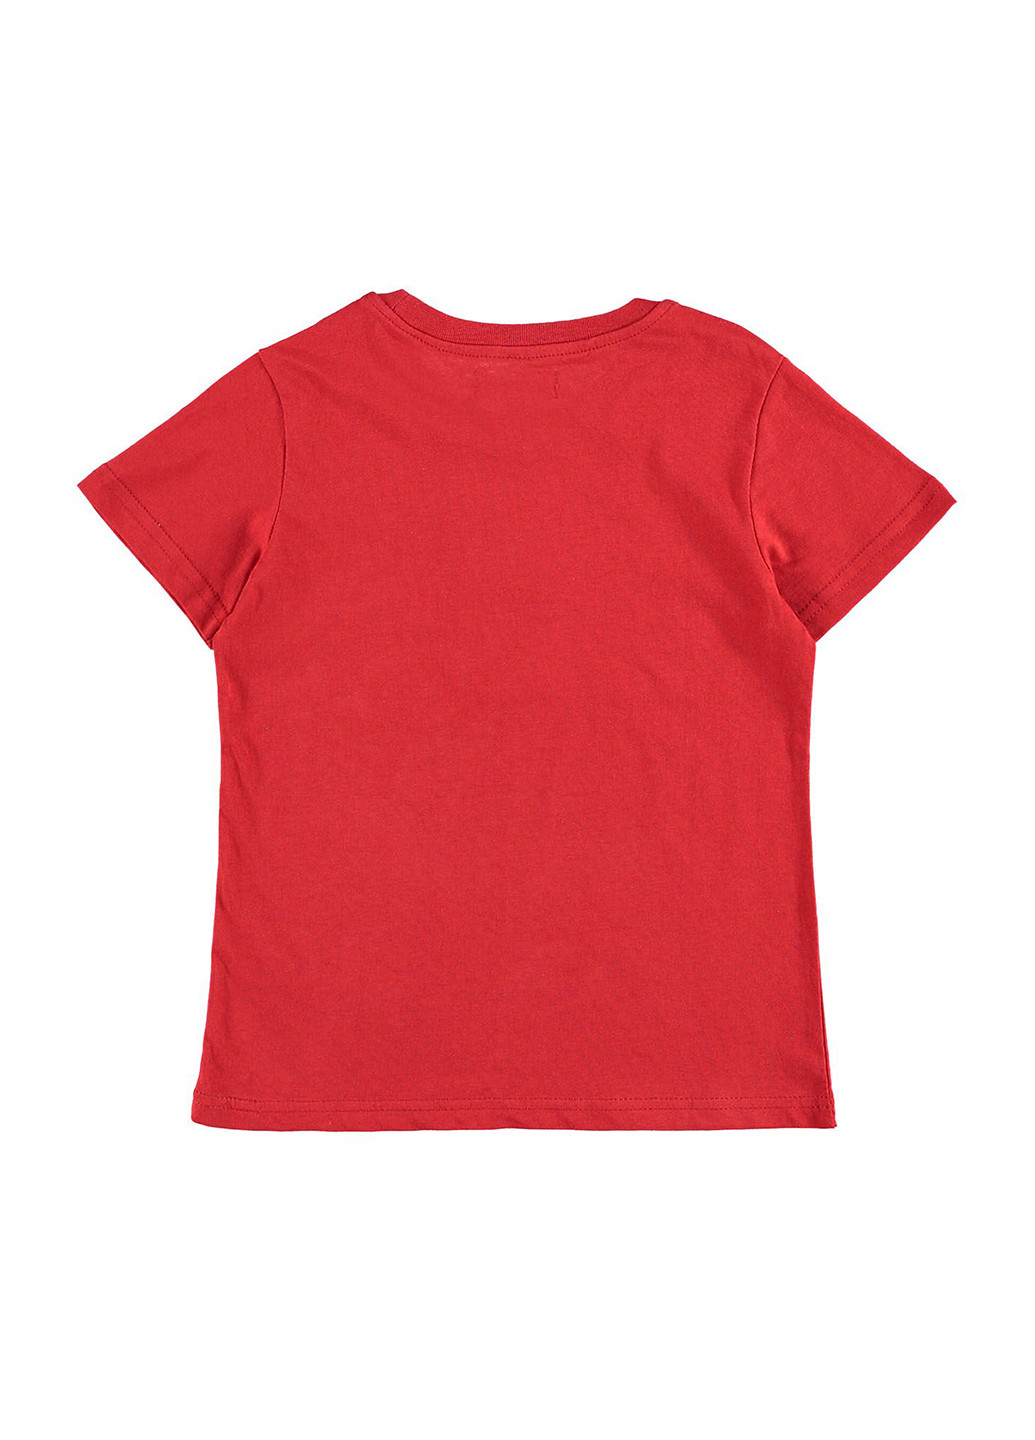 Червона літня футболка з коротким рукавом Piazza Italia